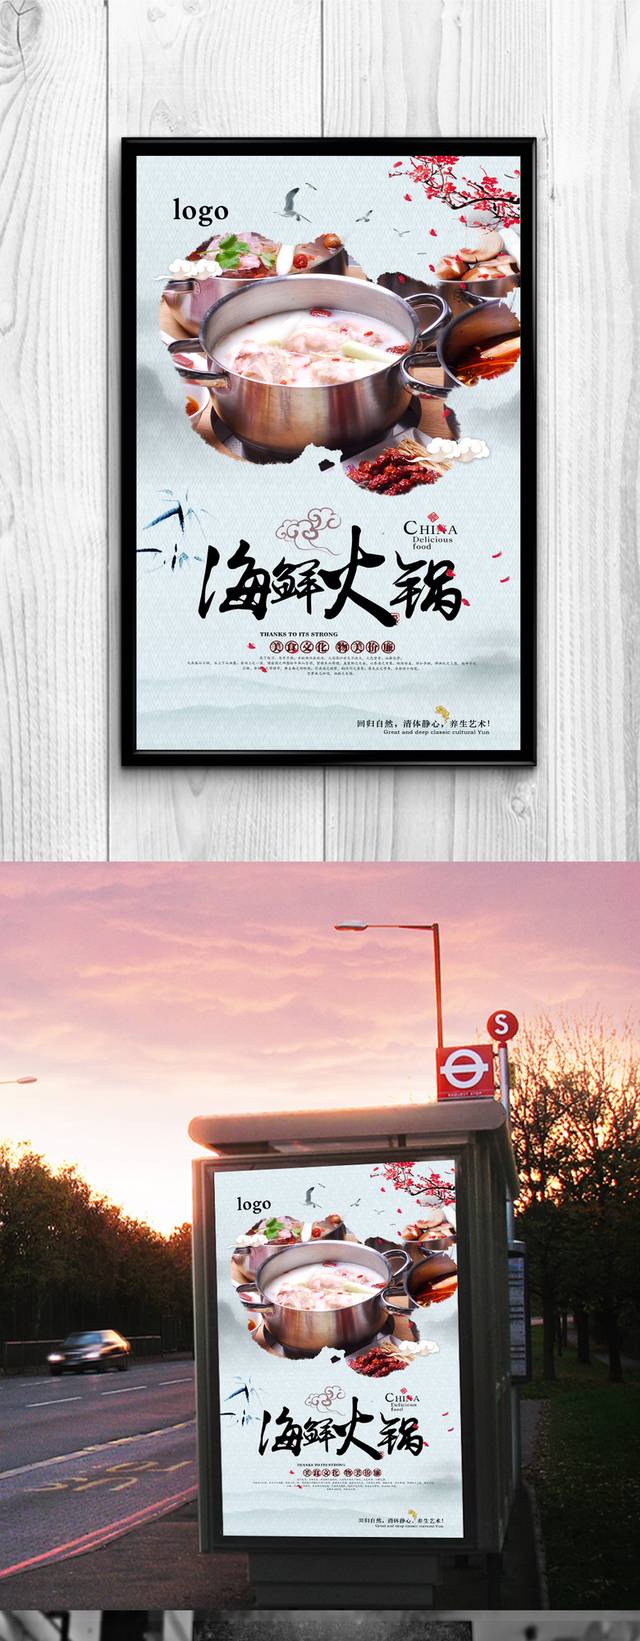 高清海鲜火锅宣传海报设计